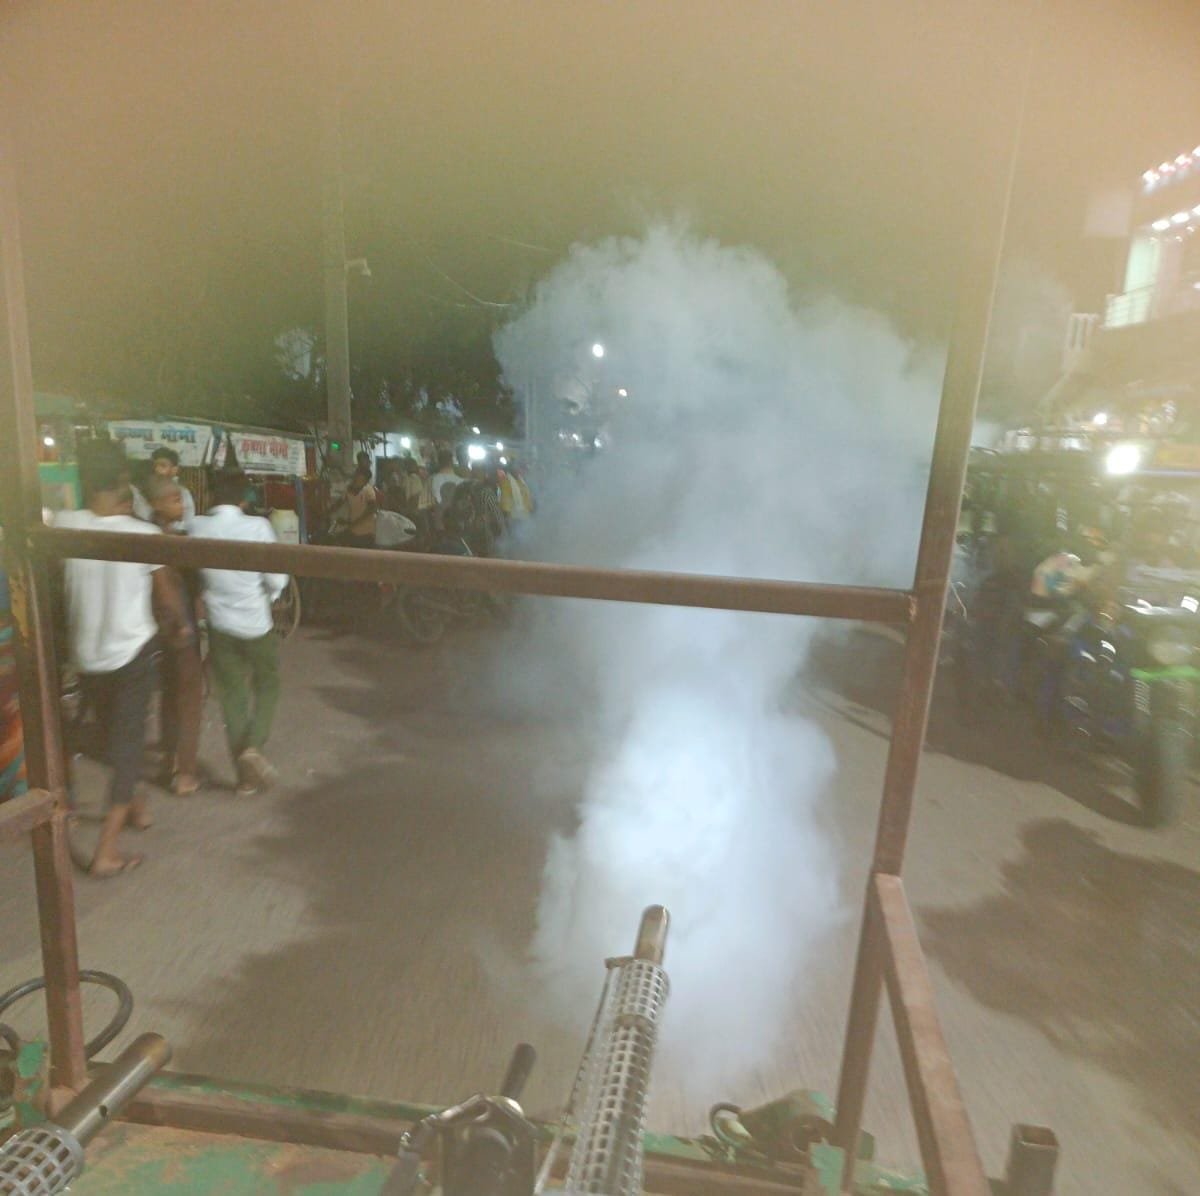 Grih Saundarya | शेखपुरा जिले में डेंगू से बचाव के लिए की जा रही है फॉगिंग 